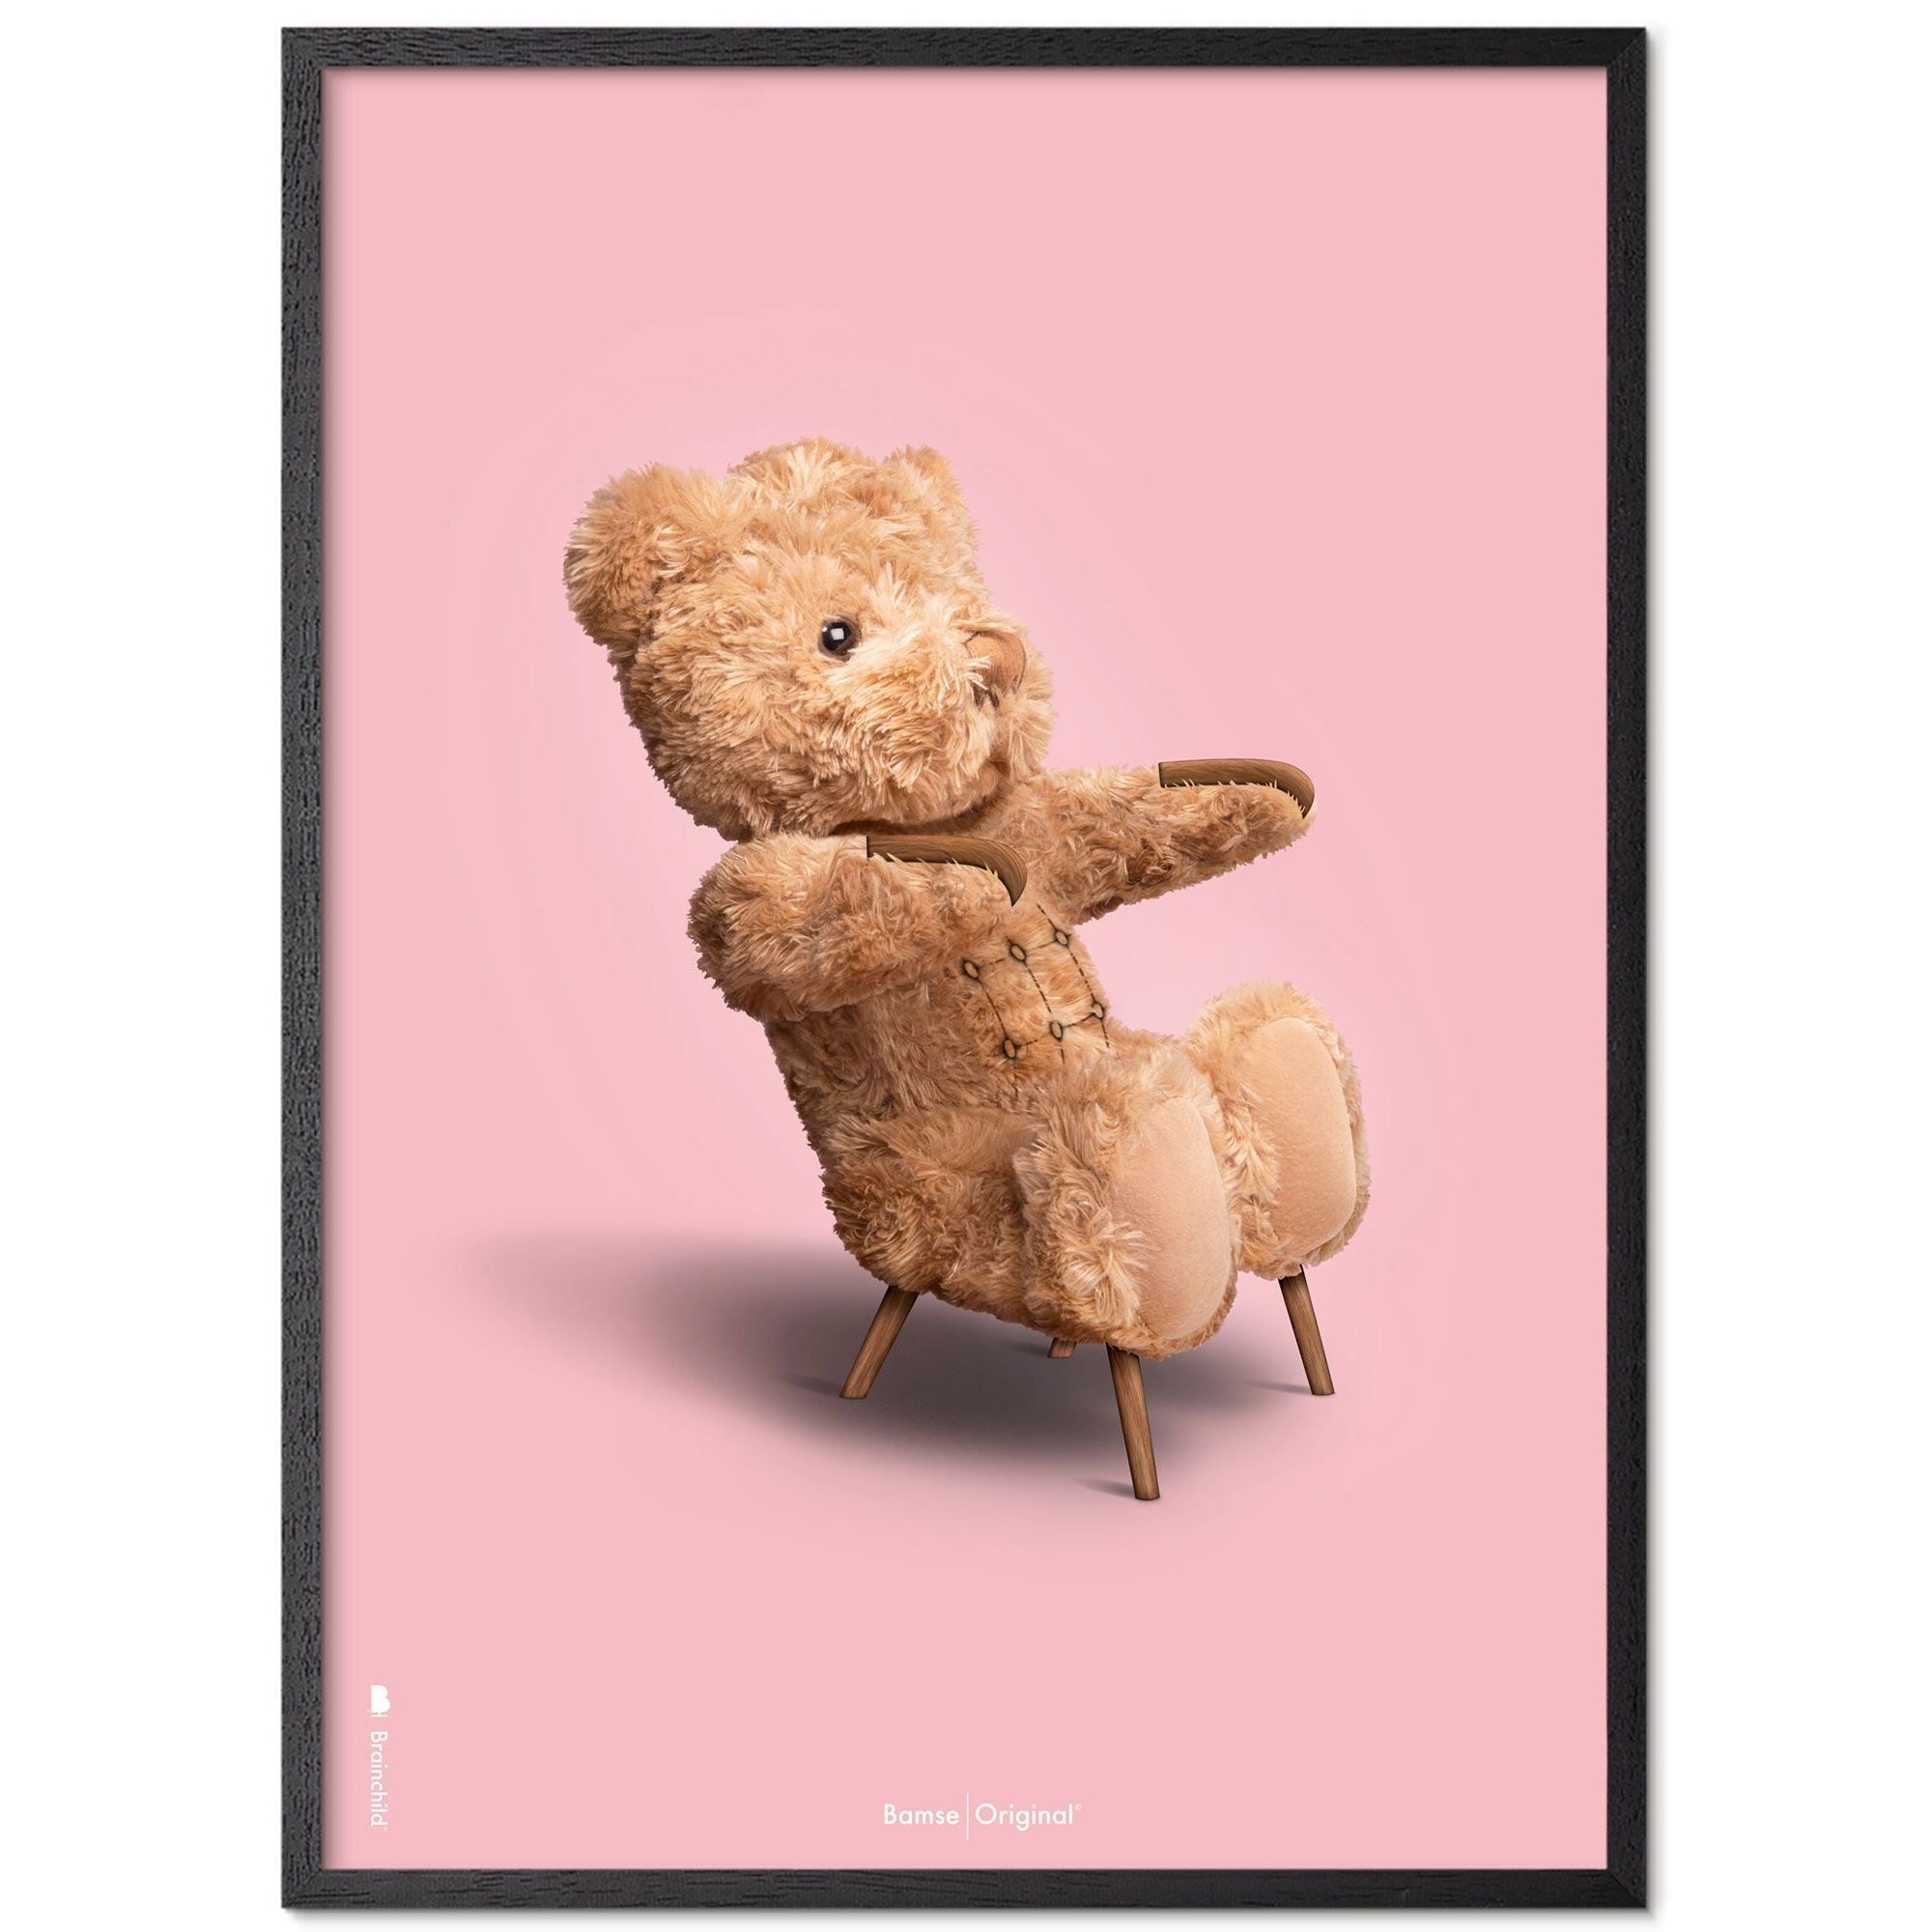 Brainchild Teddybär Classic Posterrahmen aus schwarz lackiertem Holz 70x100 cm, rosa Hintergrund